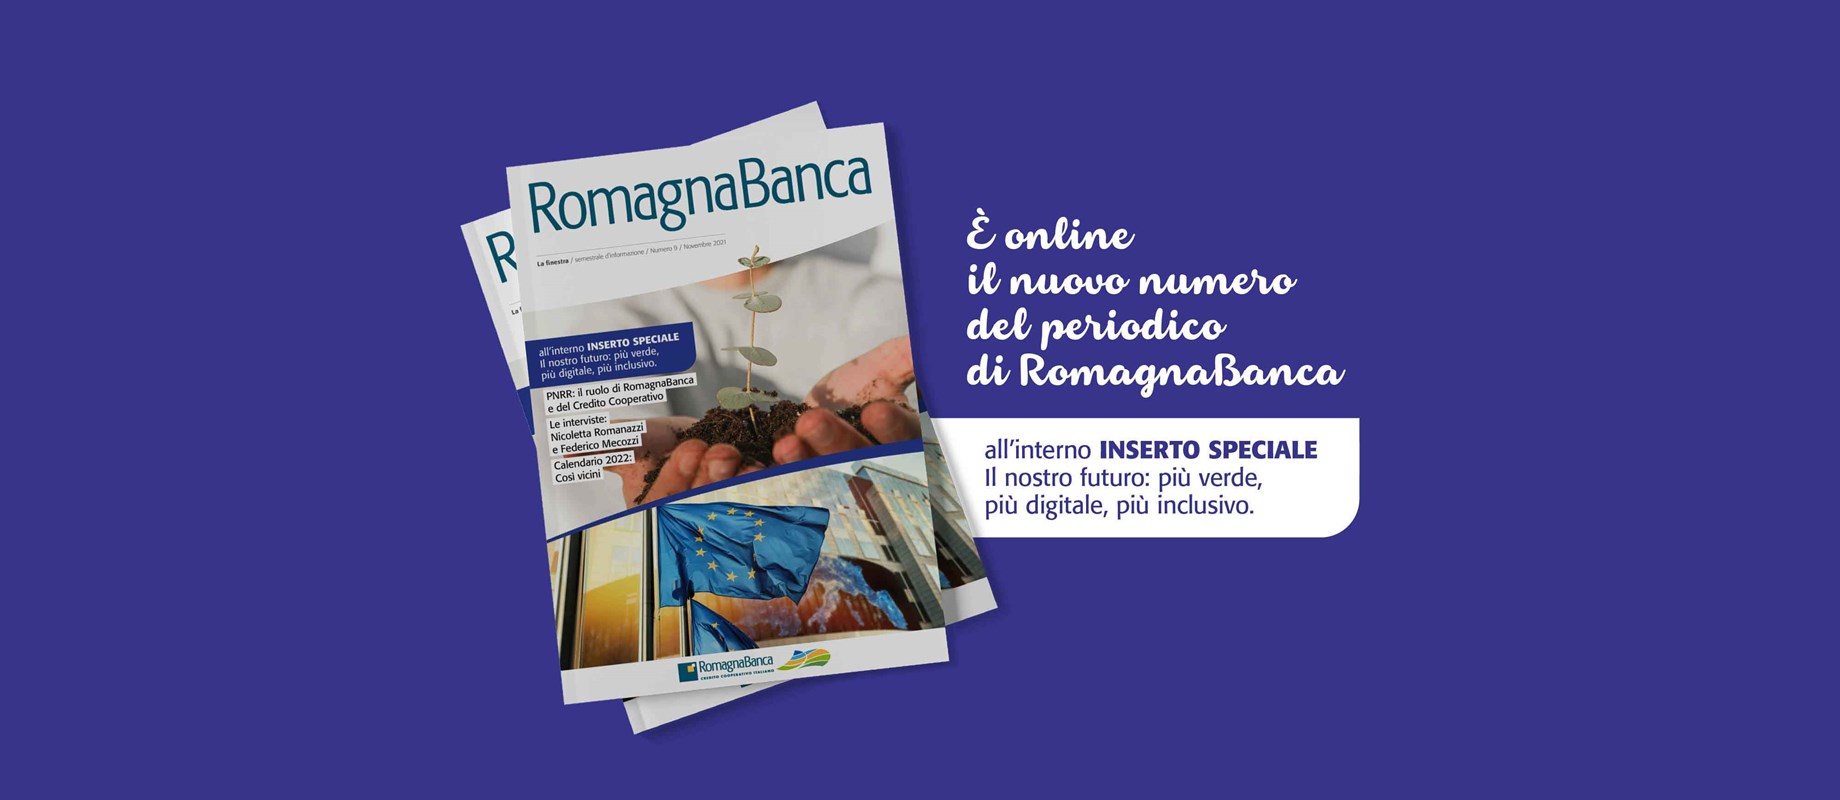 In questo numero PNRR, interviste a Guido Caselli, Nicoletta Romanazzi, Federico Mecozzi e numerose iniziative dedicate ai Soci RomagnaBanca 